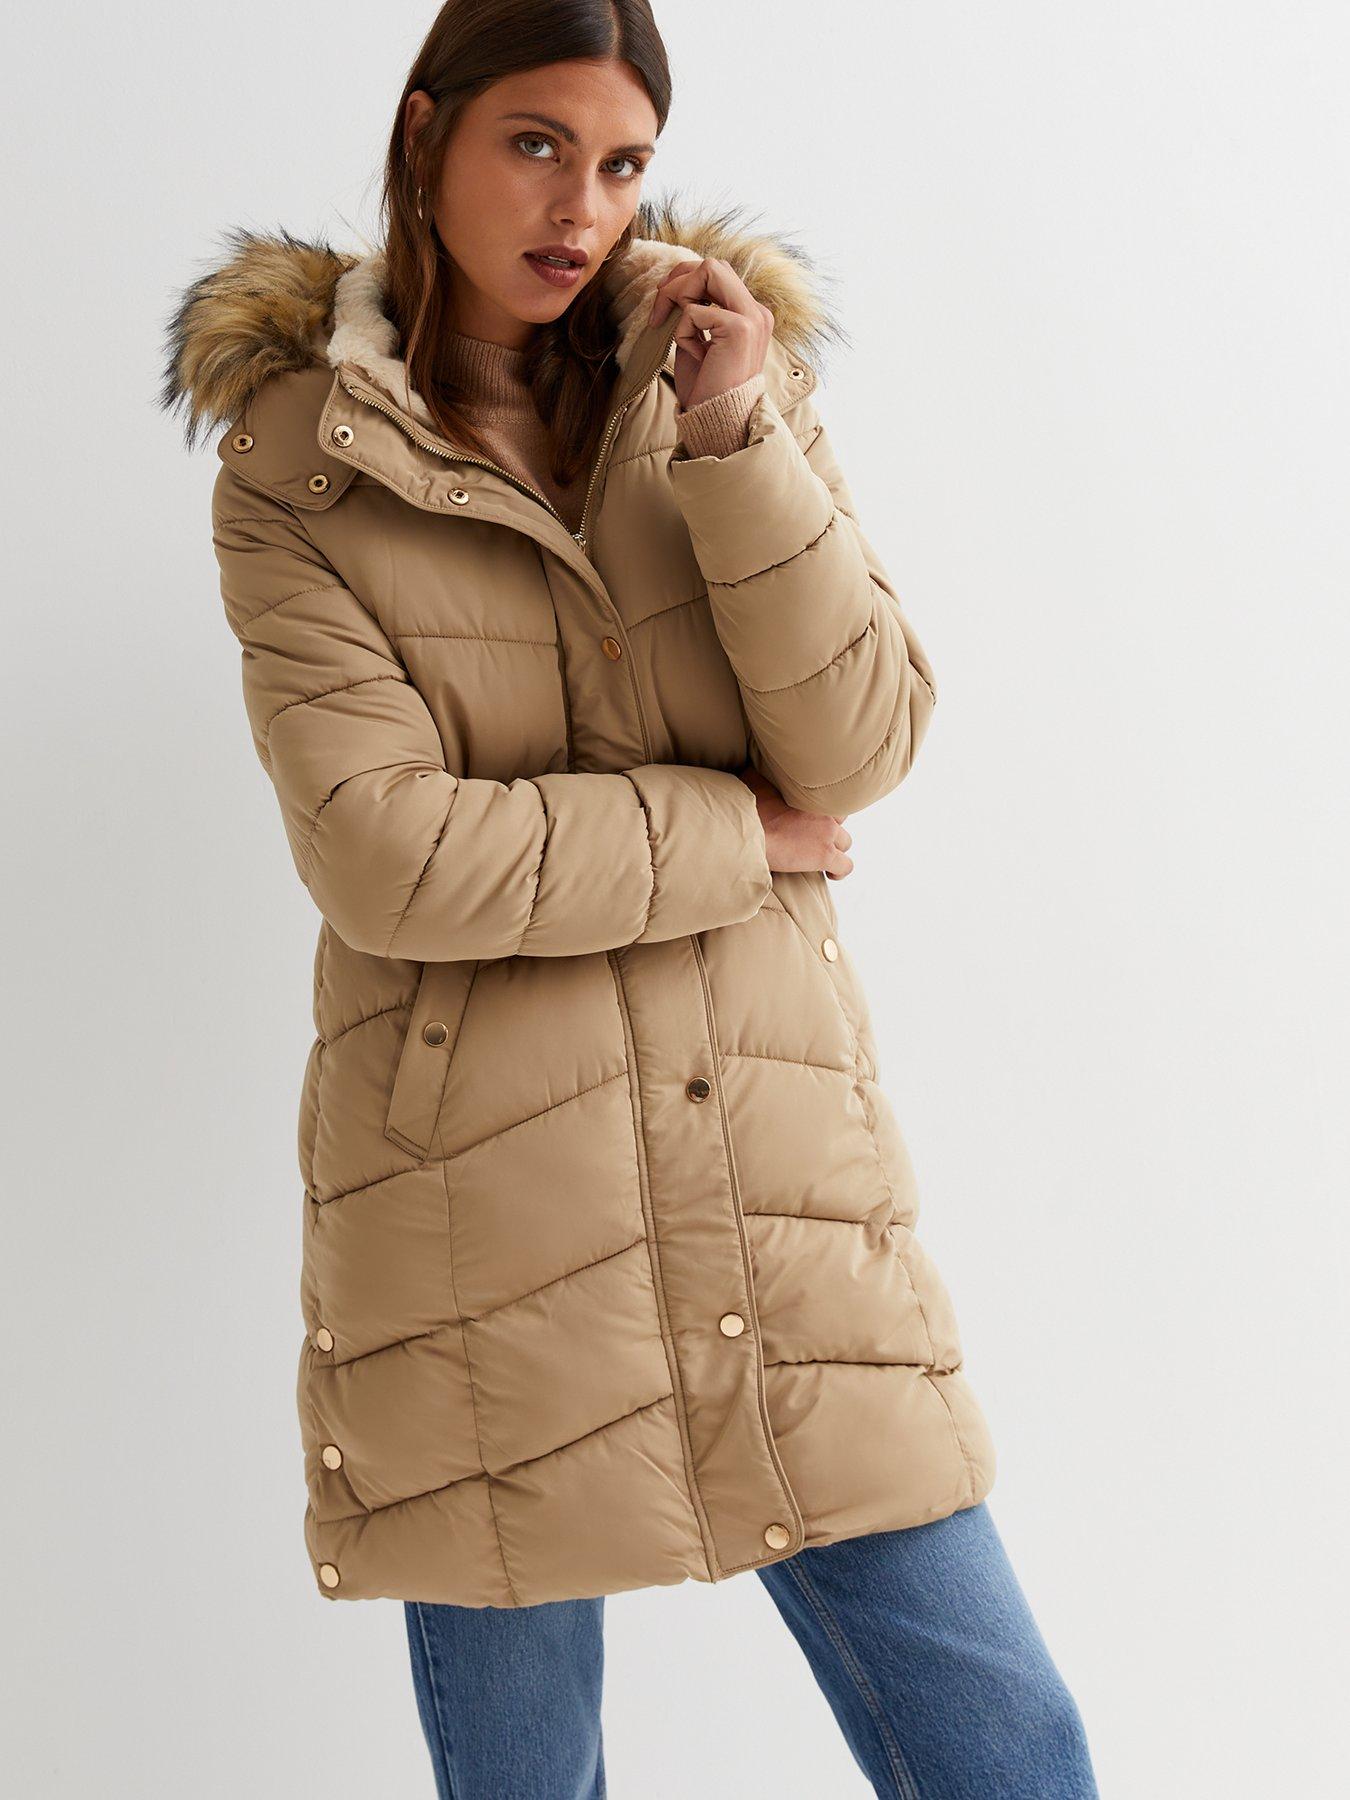 discount 61% Pink L SHEIN Long coat WOMEN FASHION Coats Long coat Fur 